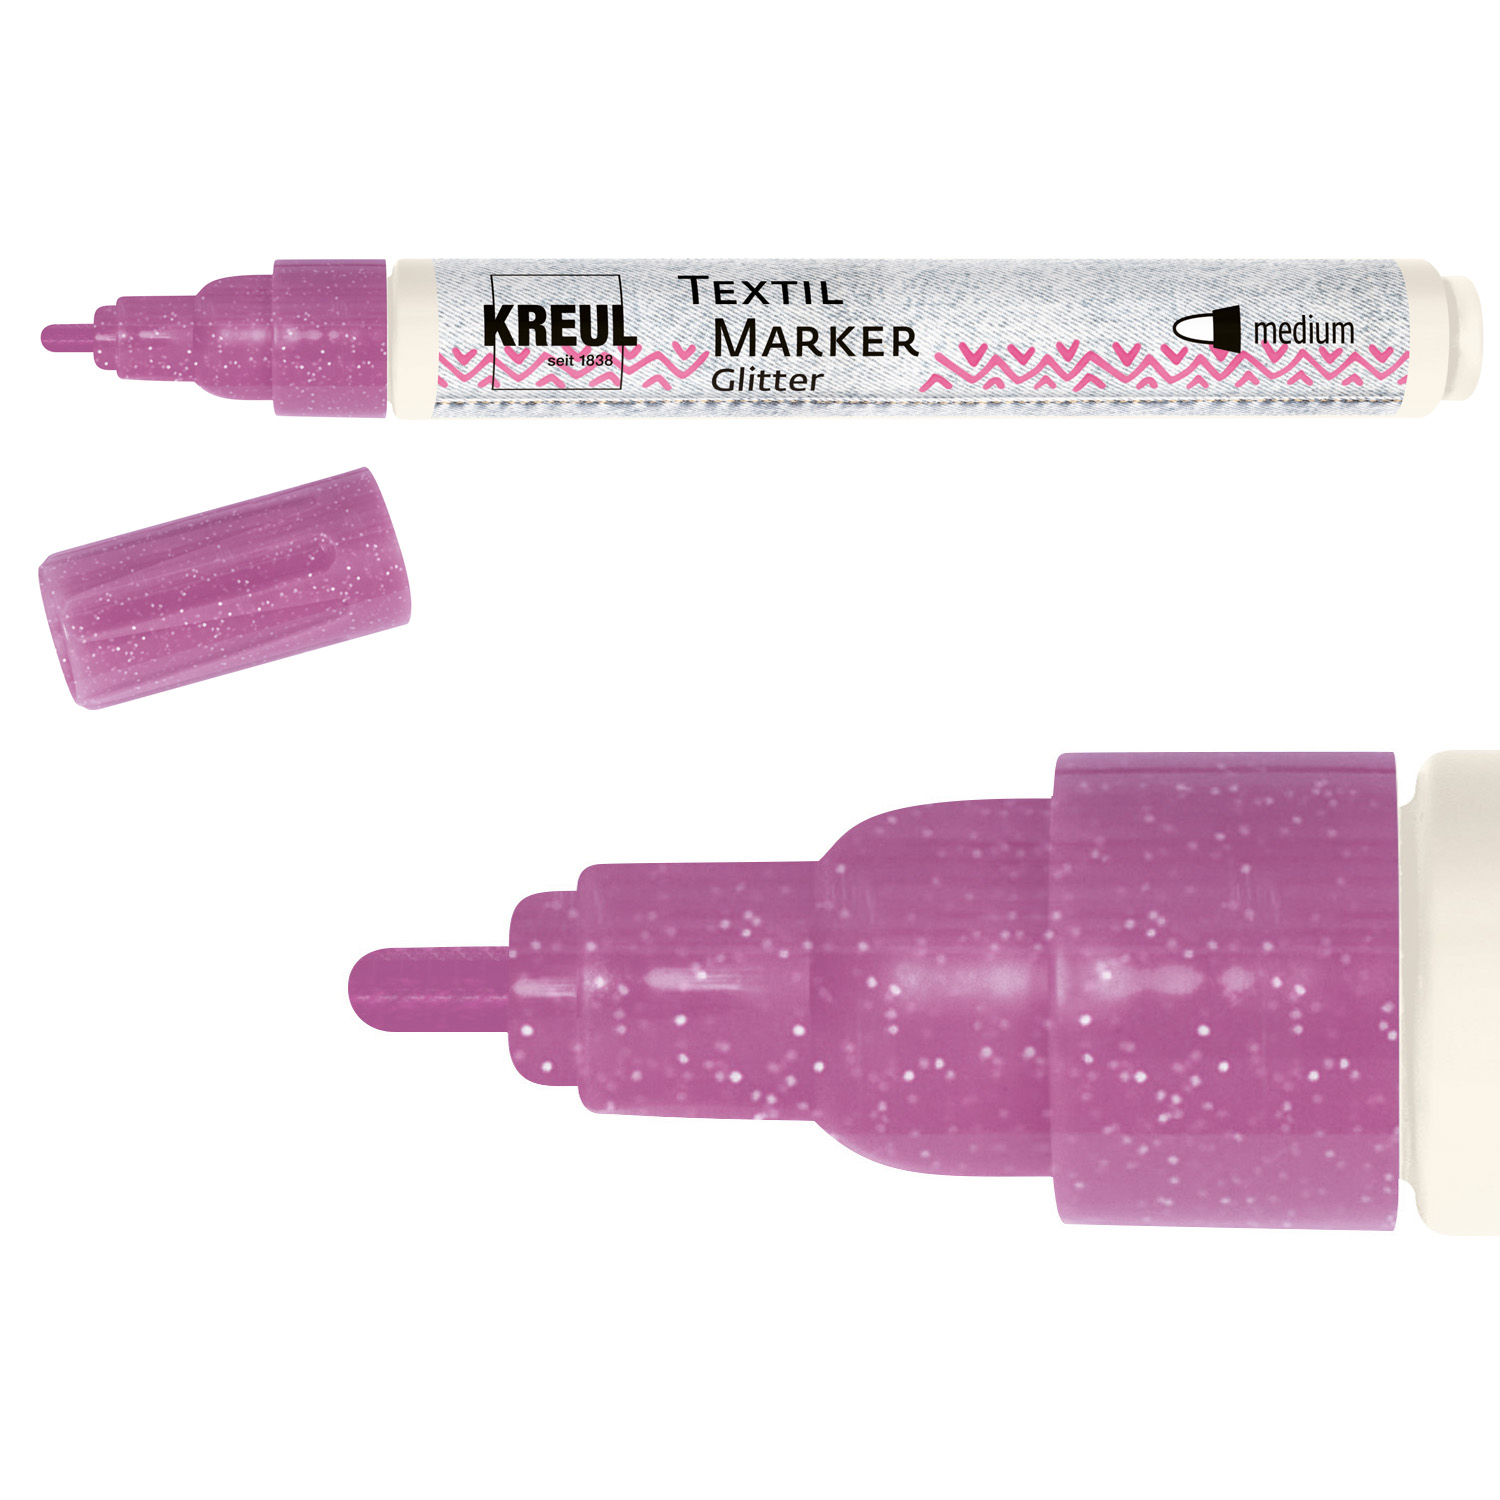 Kreul Textil Marker / Stoffmalstift, Glitter, Medium, 2-4 mm, Rosé